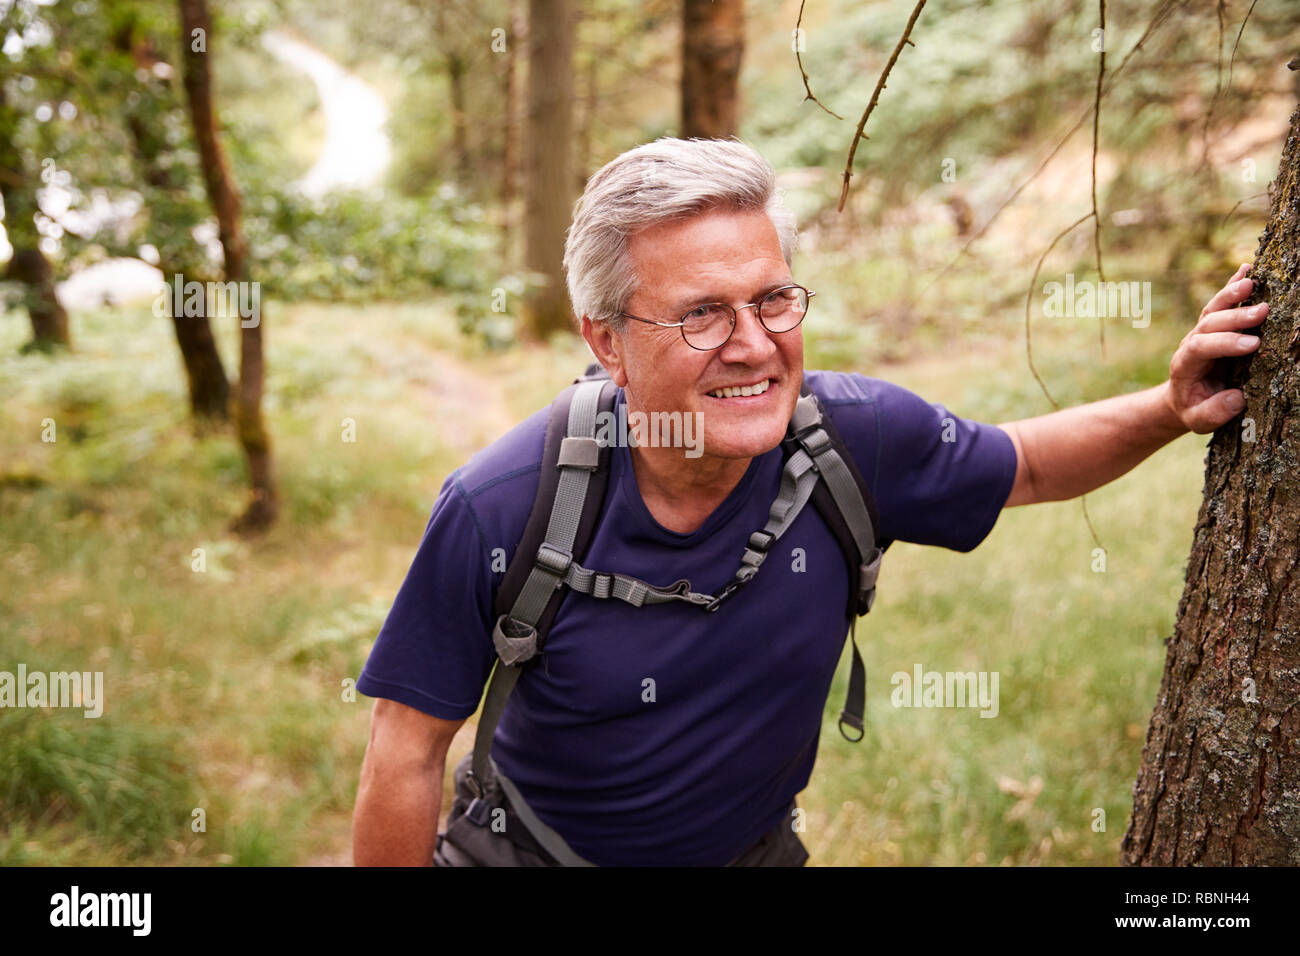 Persone di mezza età uomo caucasico prendendo una pausa durante un'escursione, appoggiato su di un albero in una foresta, vita fino Foto Stock